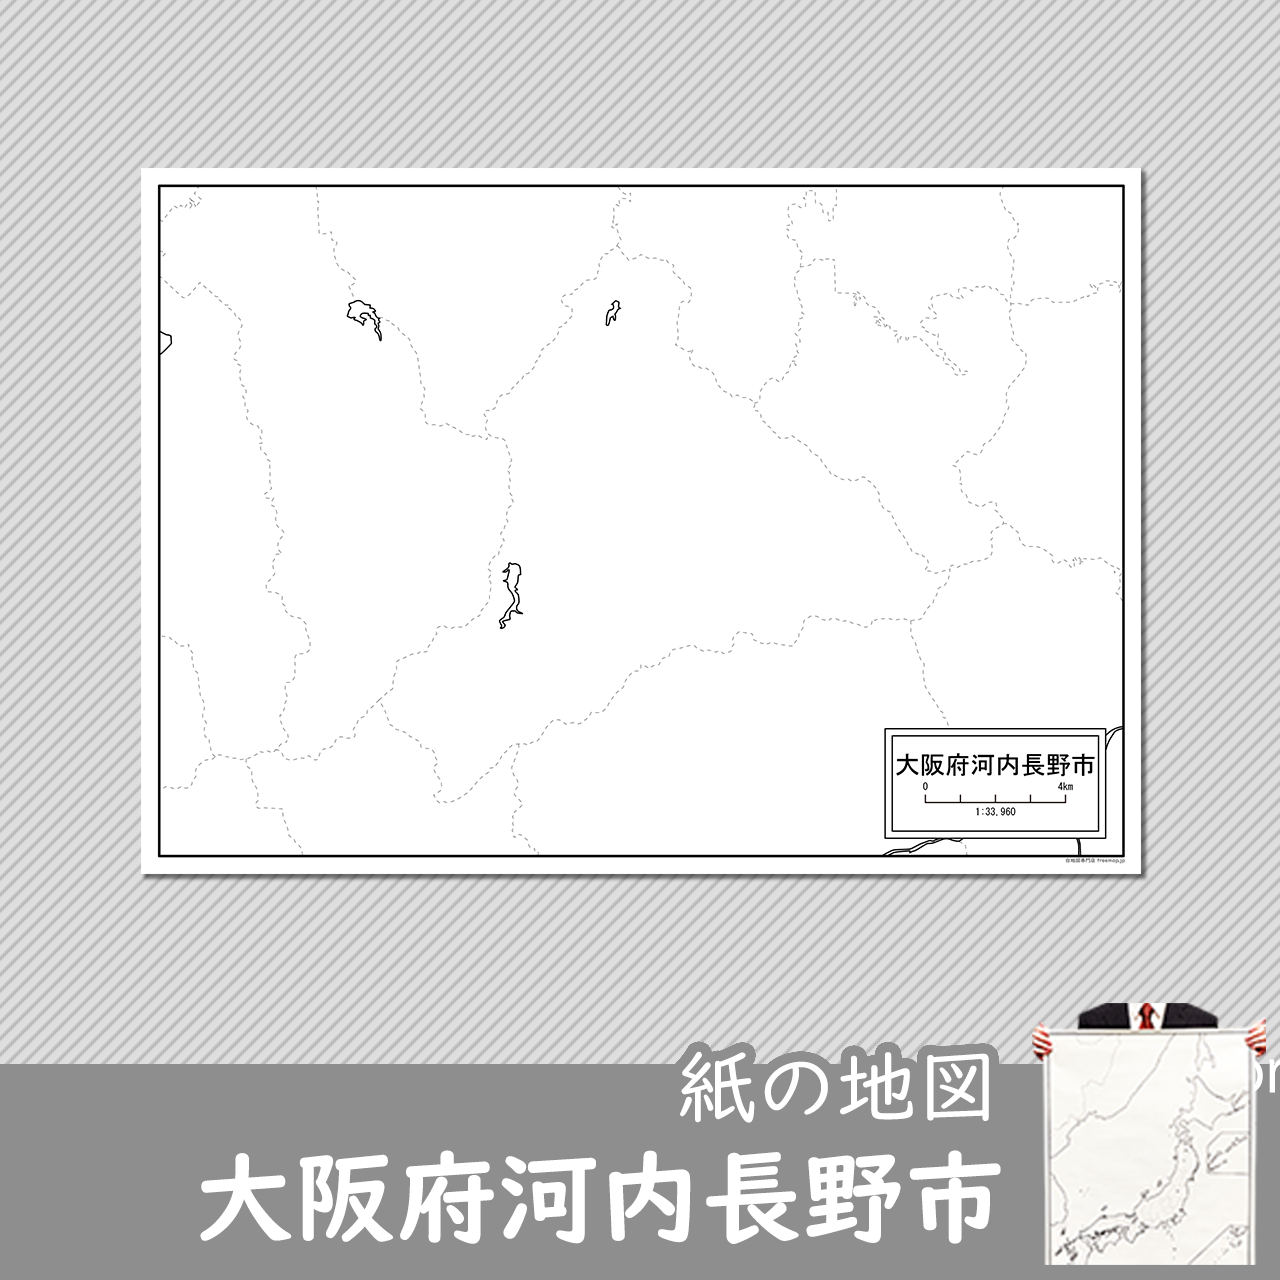 河内長野市の紙の白地図のサムネイル